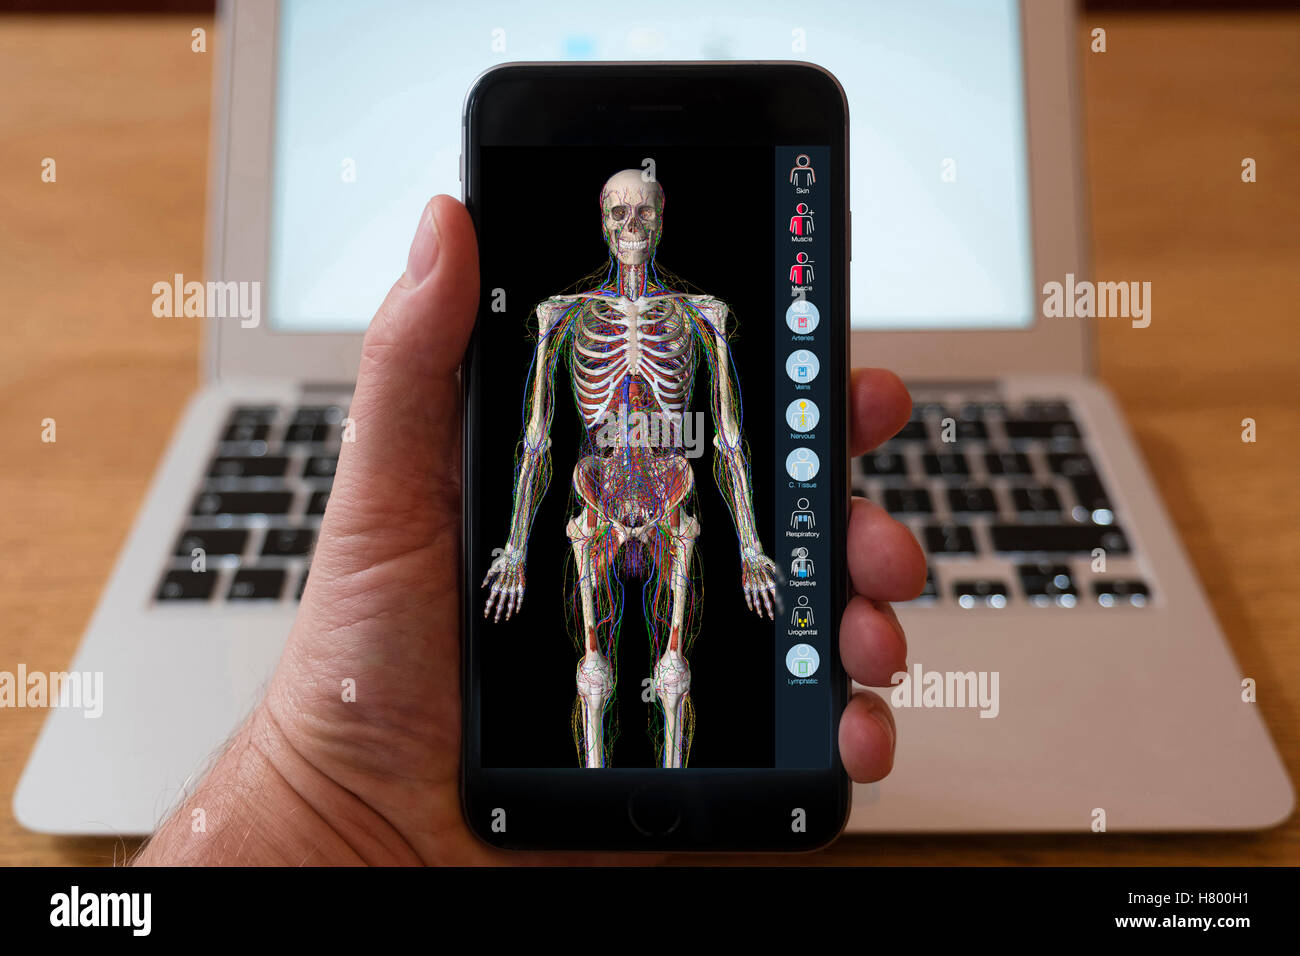 Usando el iPhone Smartphone para visualizar la anatomía del cuerpo humano app educativa. Foto de stock